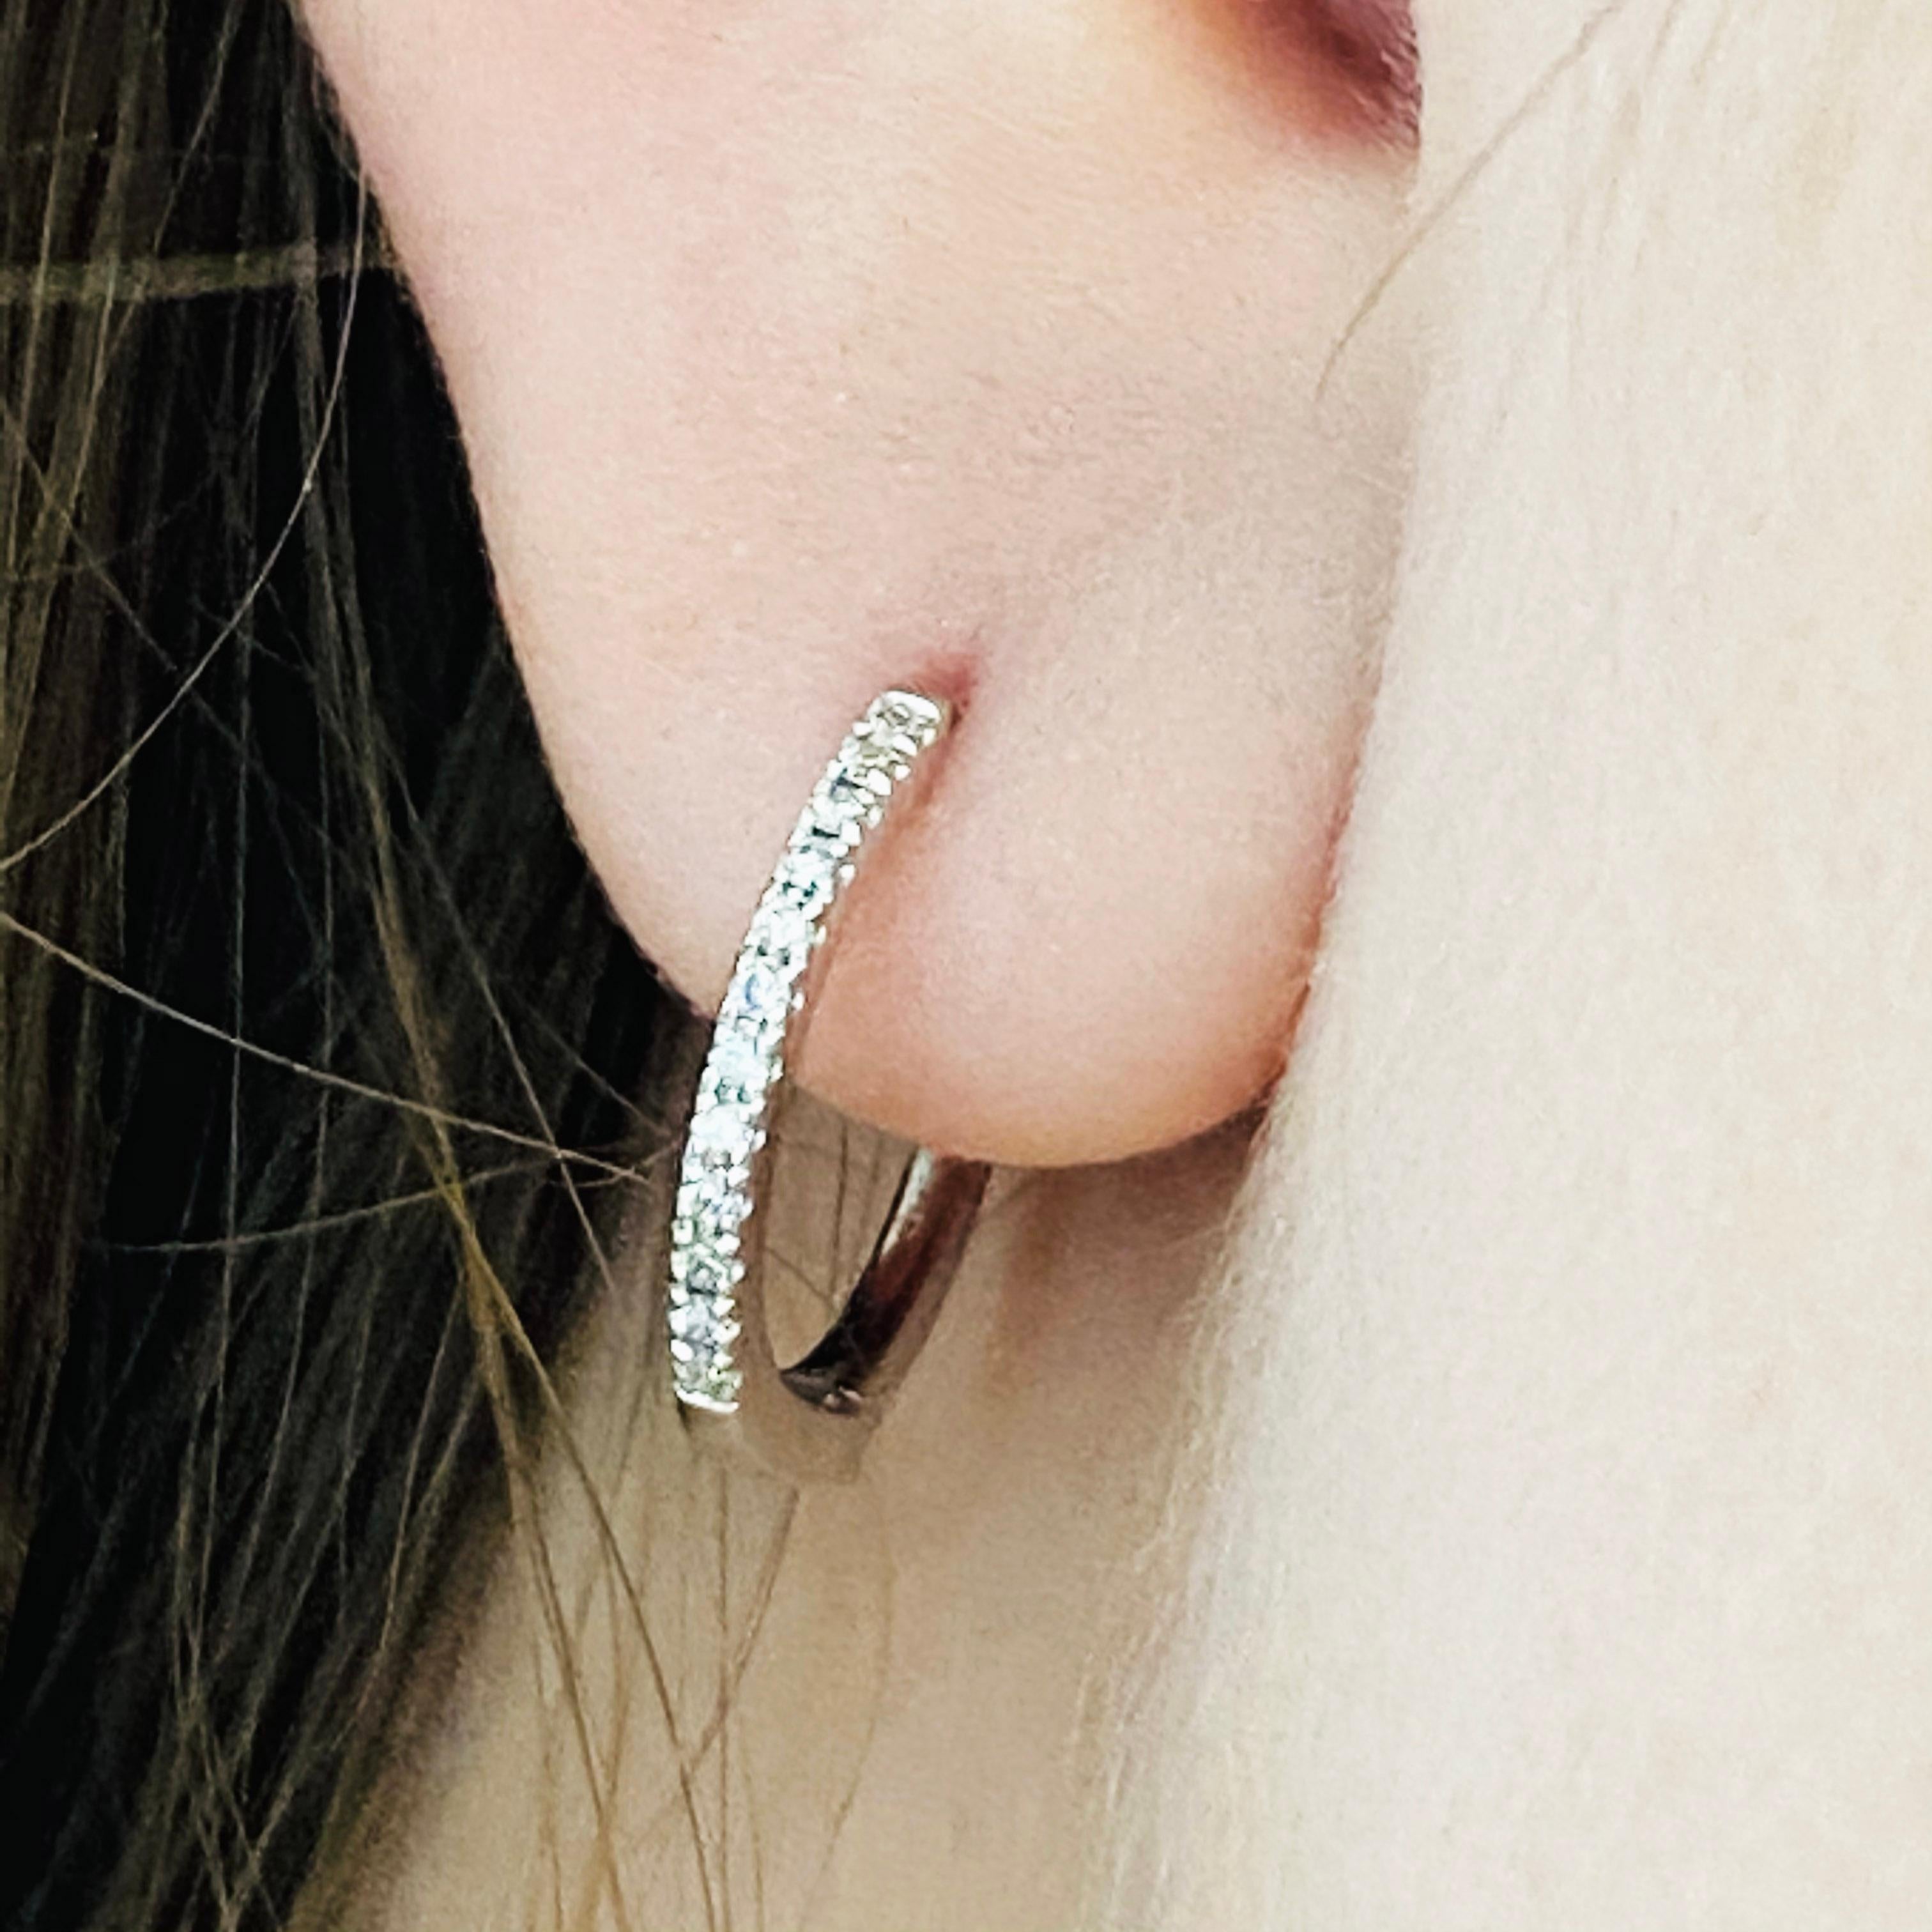 Unsere 2020 beliebtesten Ohrringe! Diese atemberaubenden polierten Diamantreifen aus 18 Karat Weißgold sind sowohl trendy als auch klassisch. Während sie früher von Königen und Königinnen getragen wurden, um Macht und sozialen Status zu